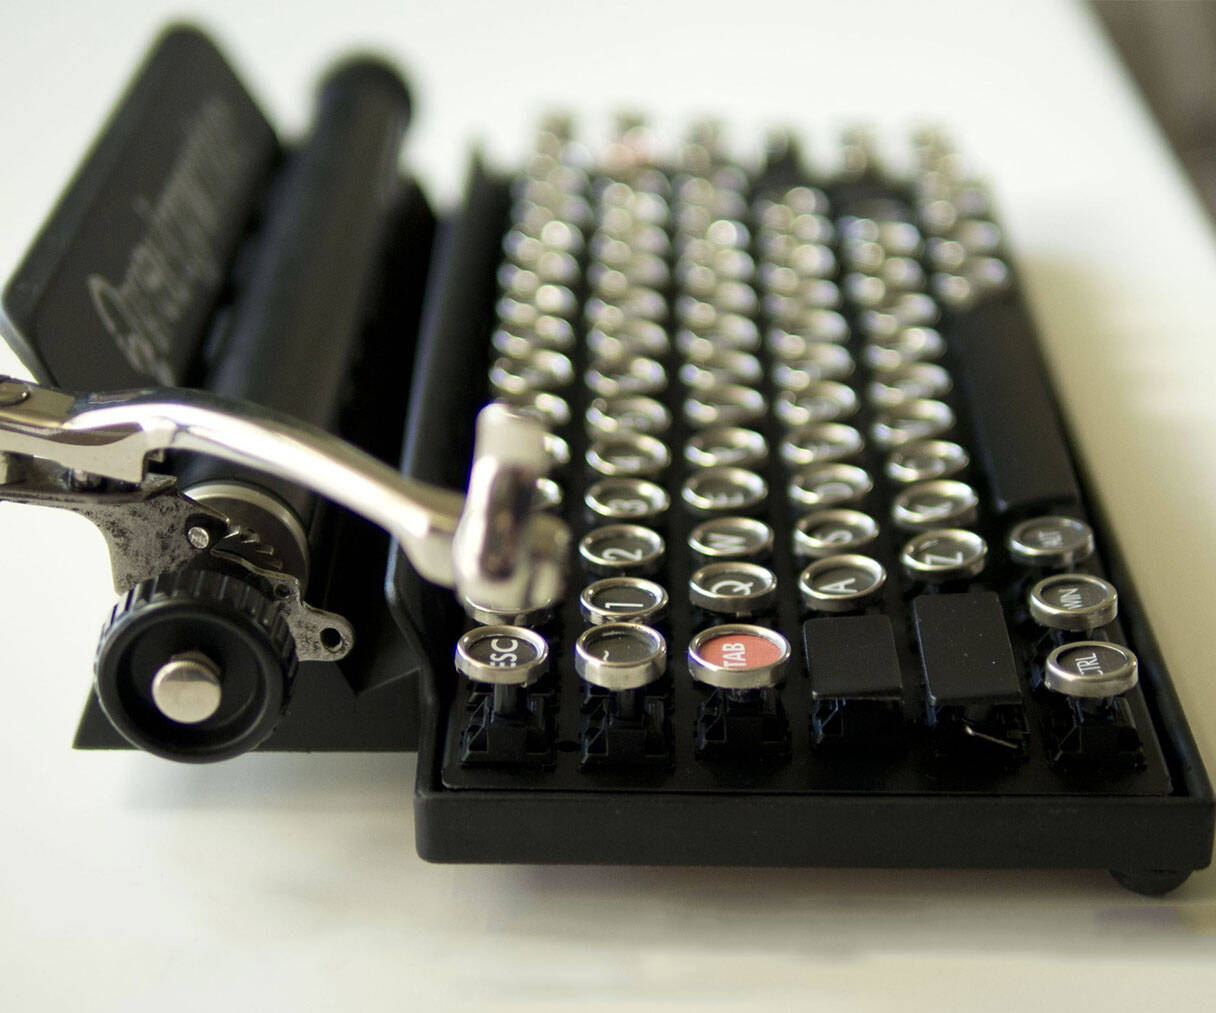 Bluetooth Typewriter Keyboard - http://coolthings.us